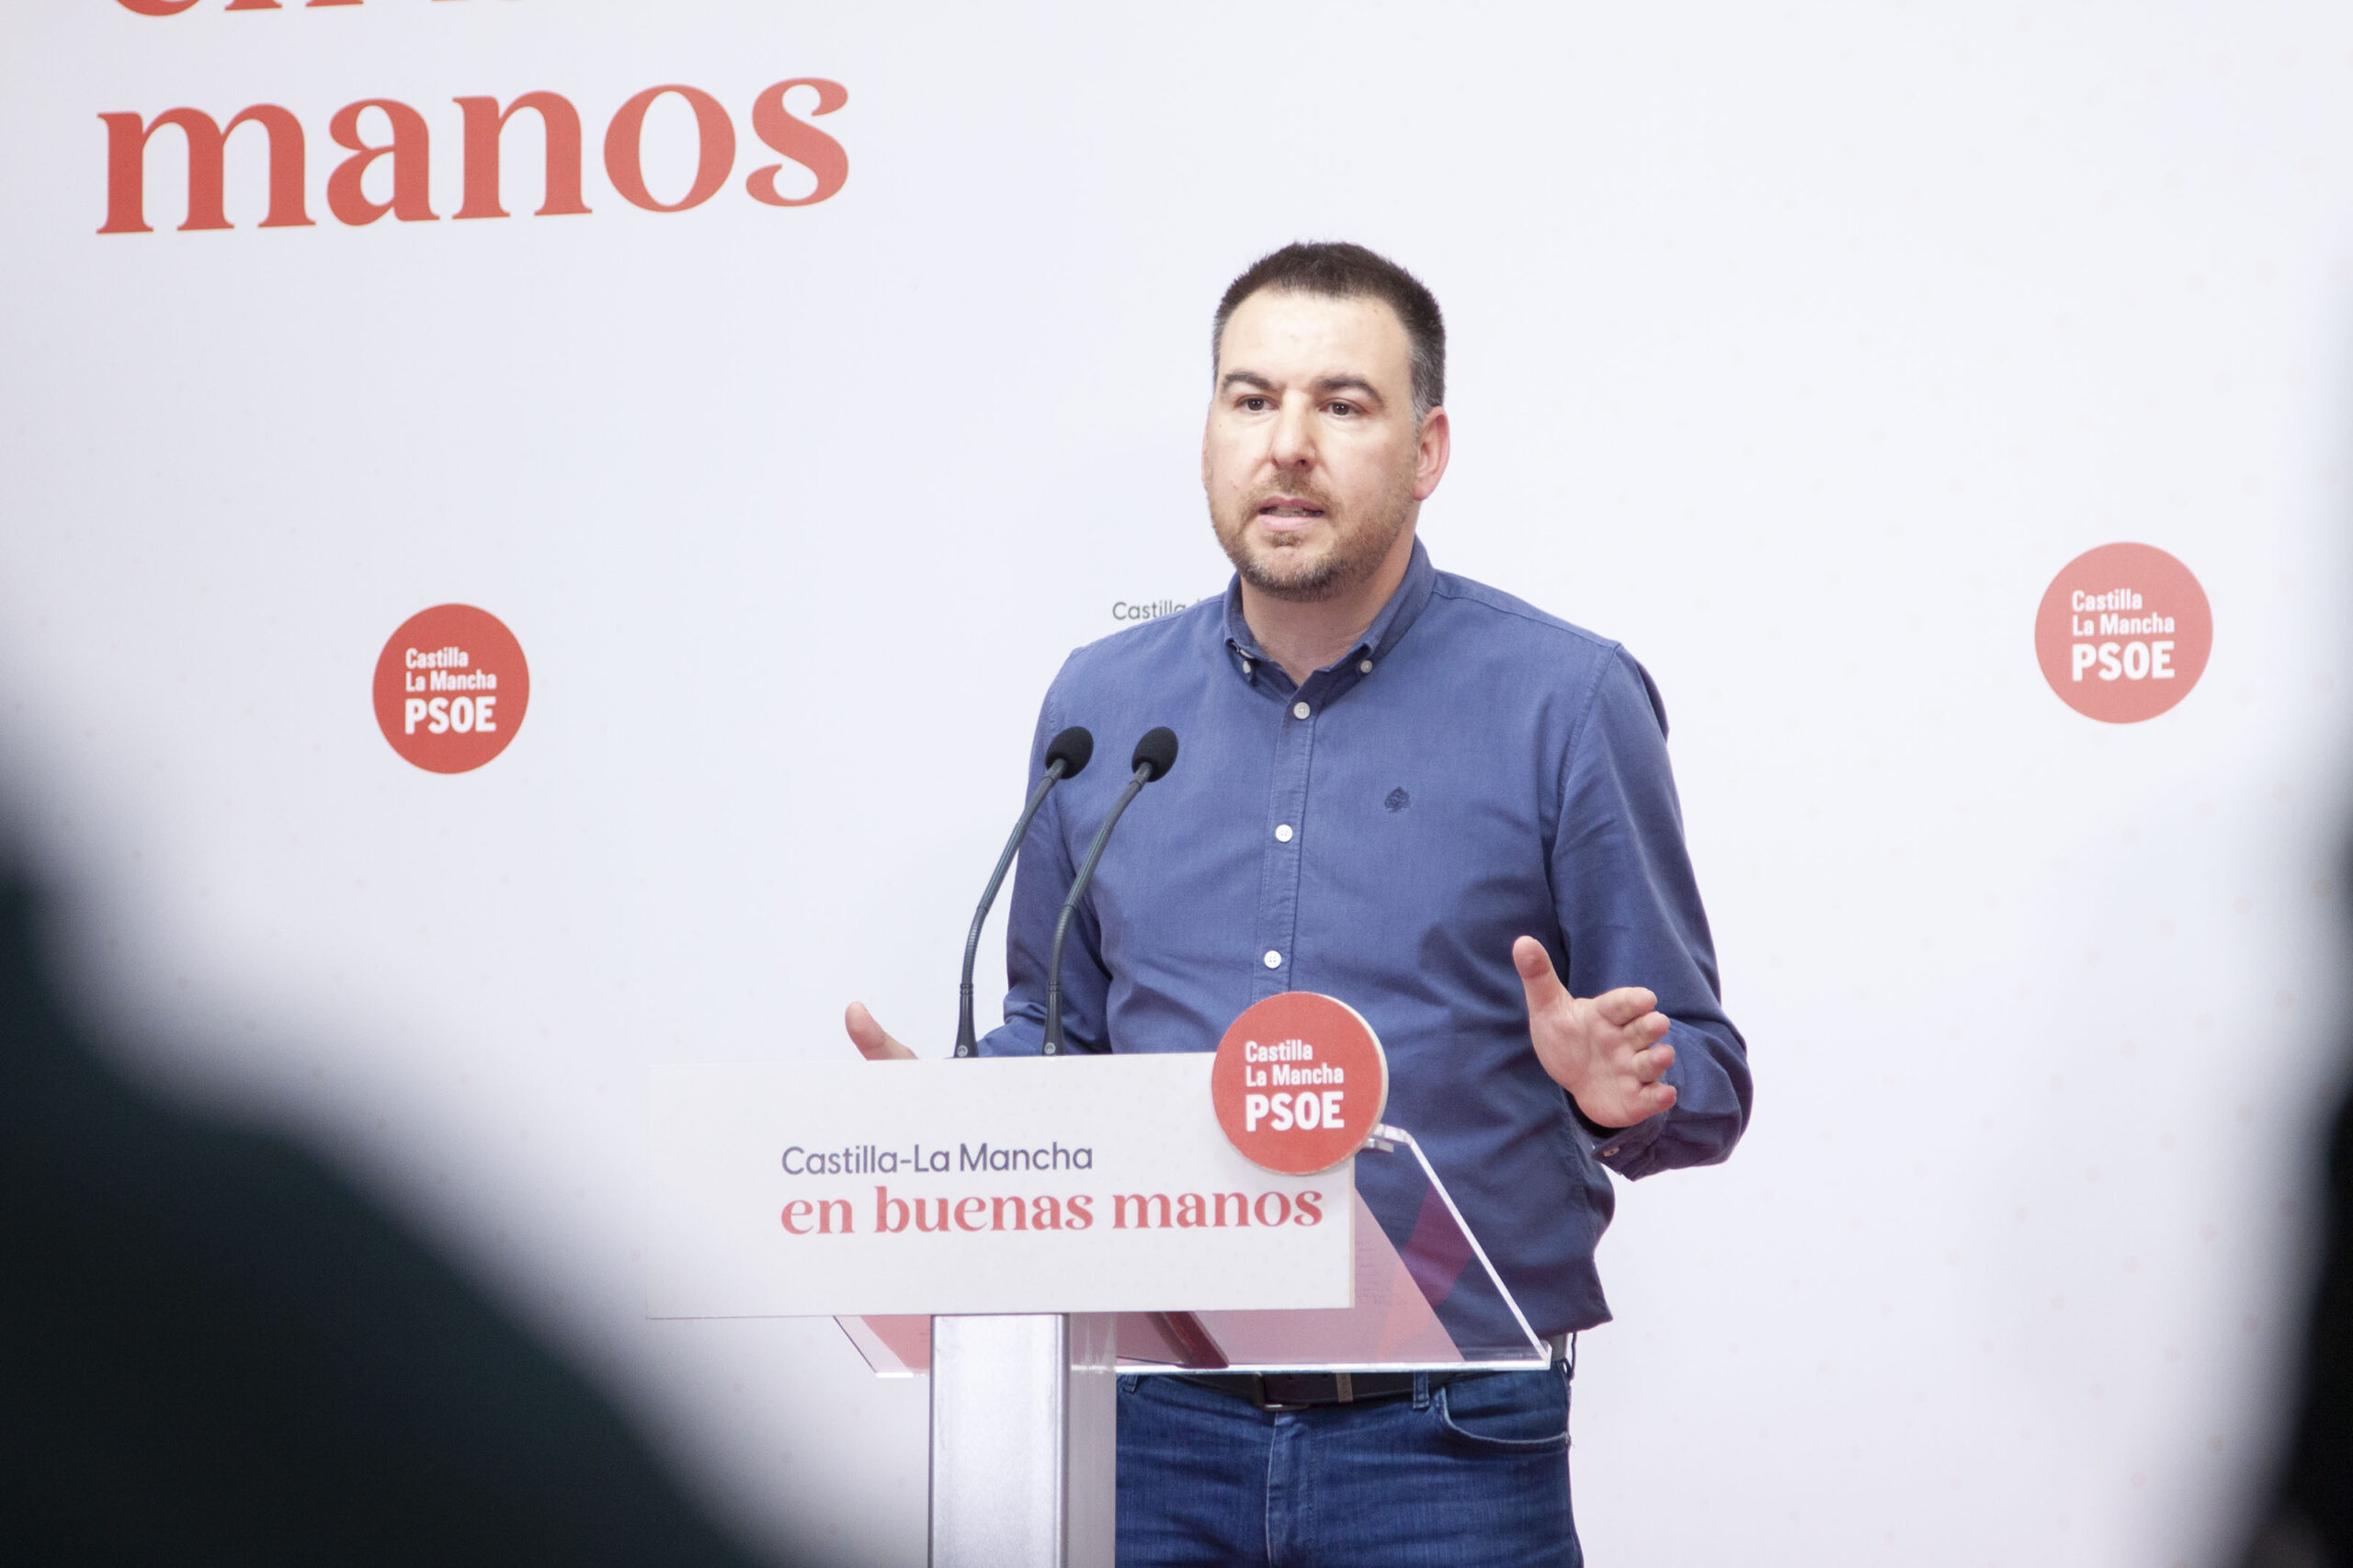 El PSOE denuncia que Núñez “ha dado 3 versiones” en menos de una semana y echa en falta “explicaciones claras y sinceras”